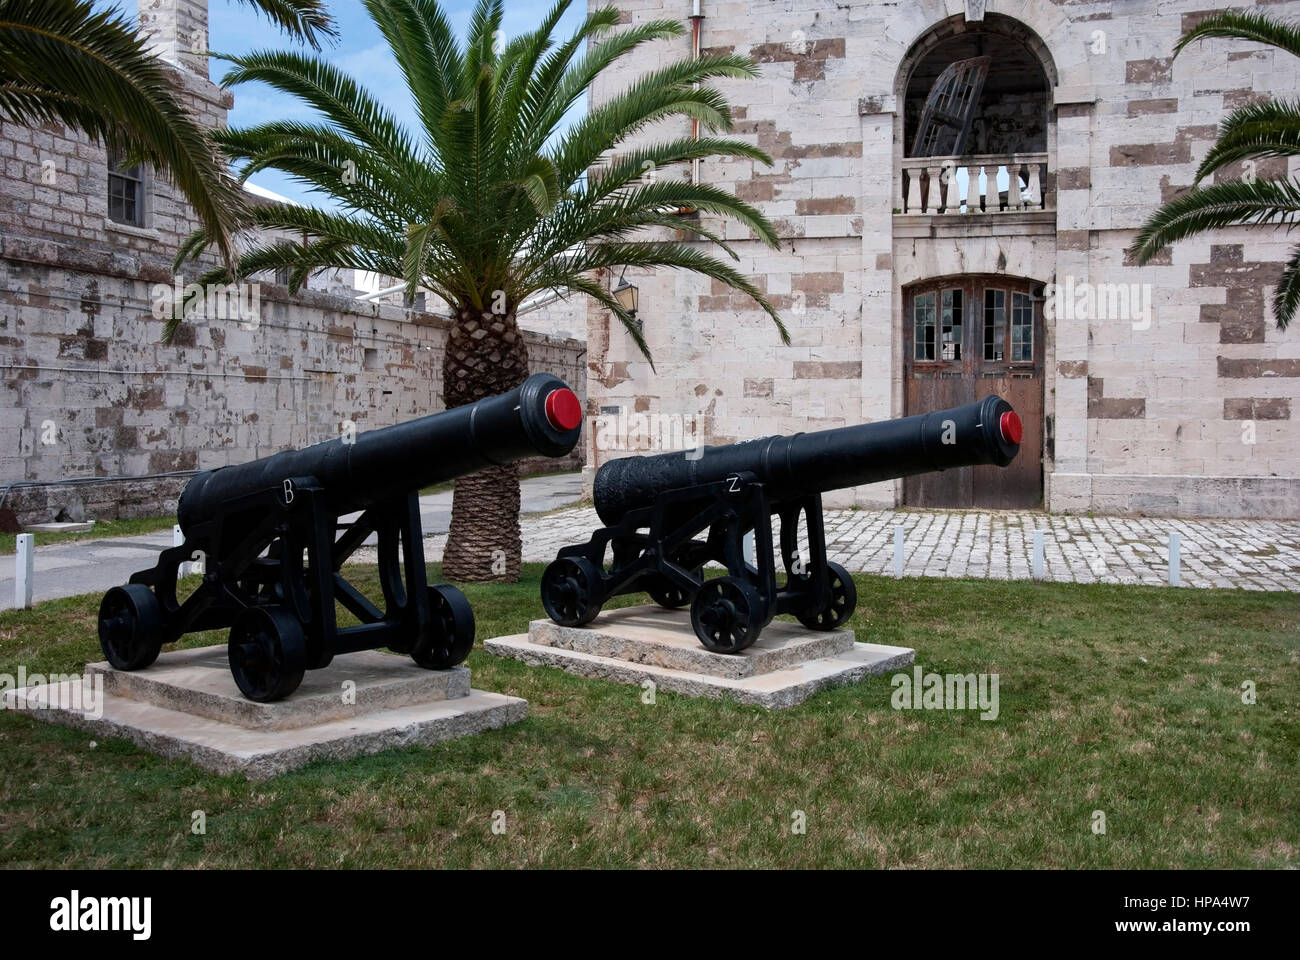 18ème siècle paire de canons sur roues Noires Musée expose deux anciens navires navire noir grande Artillerie Canons canons des armes à feu sur quatre roues roues transport Banque D'Images